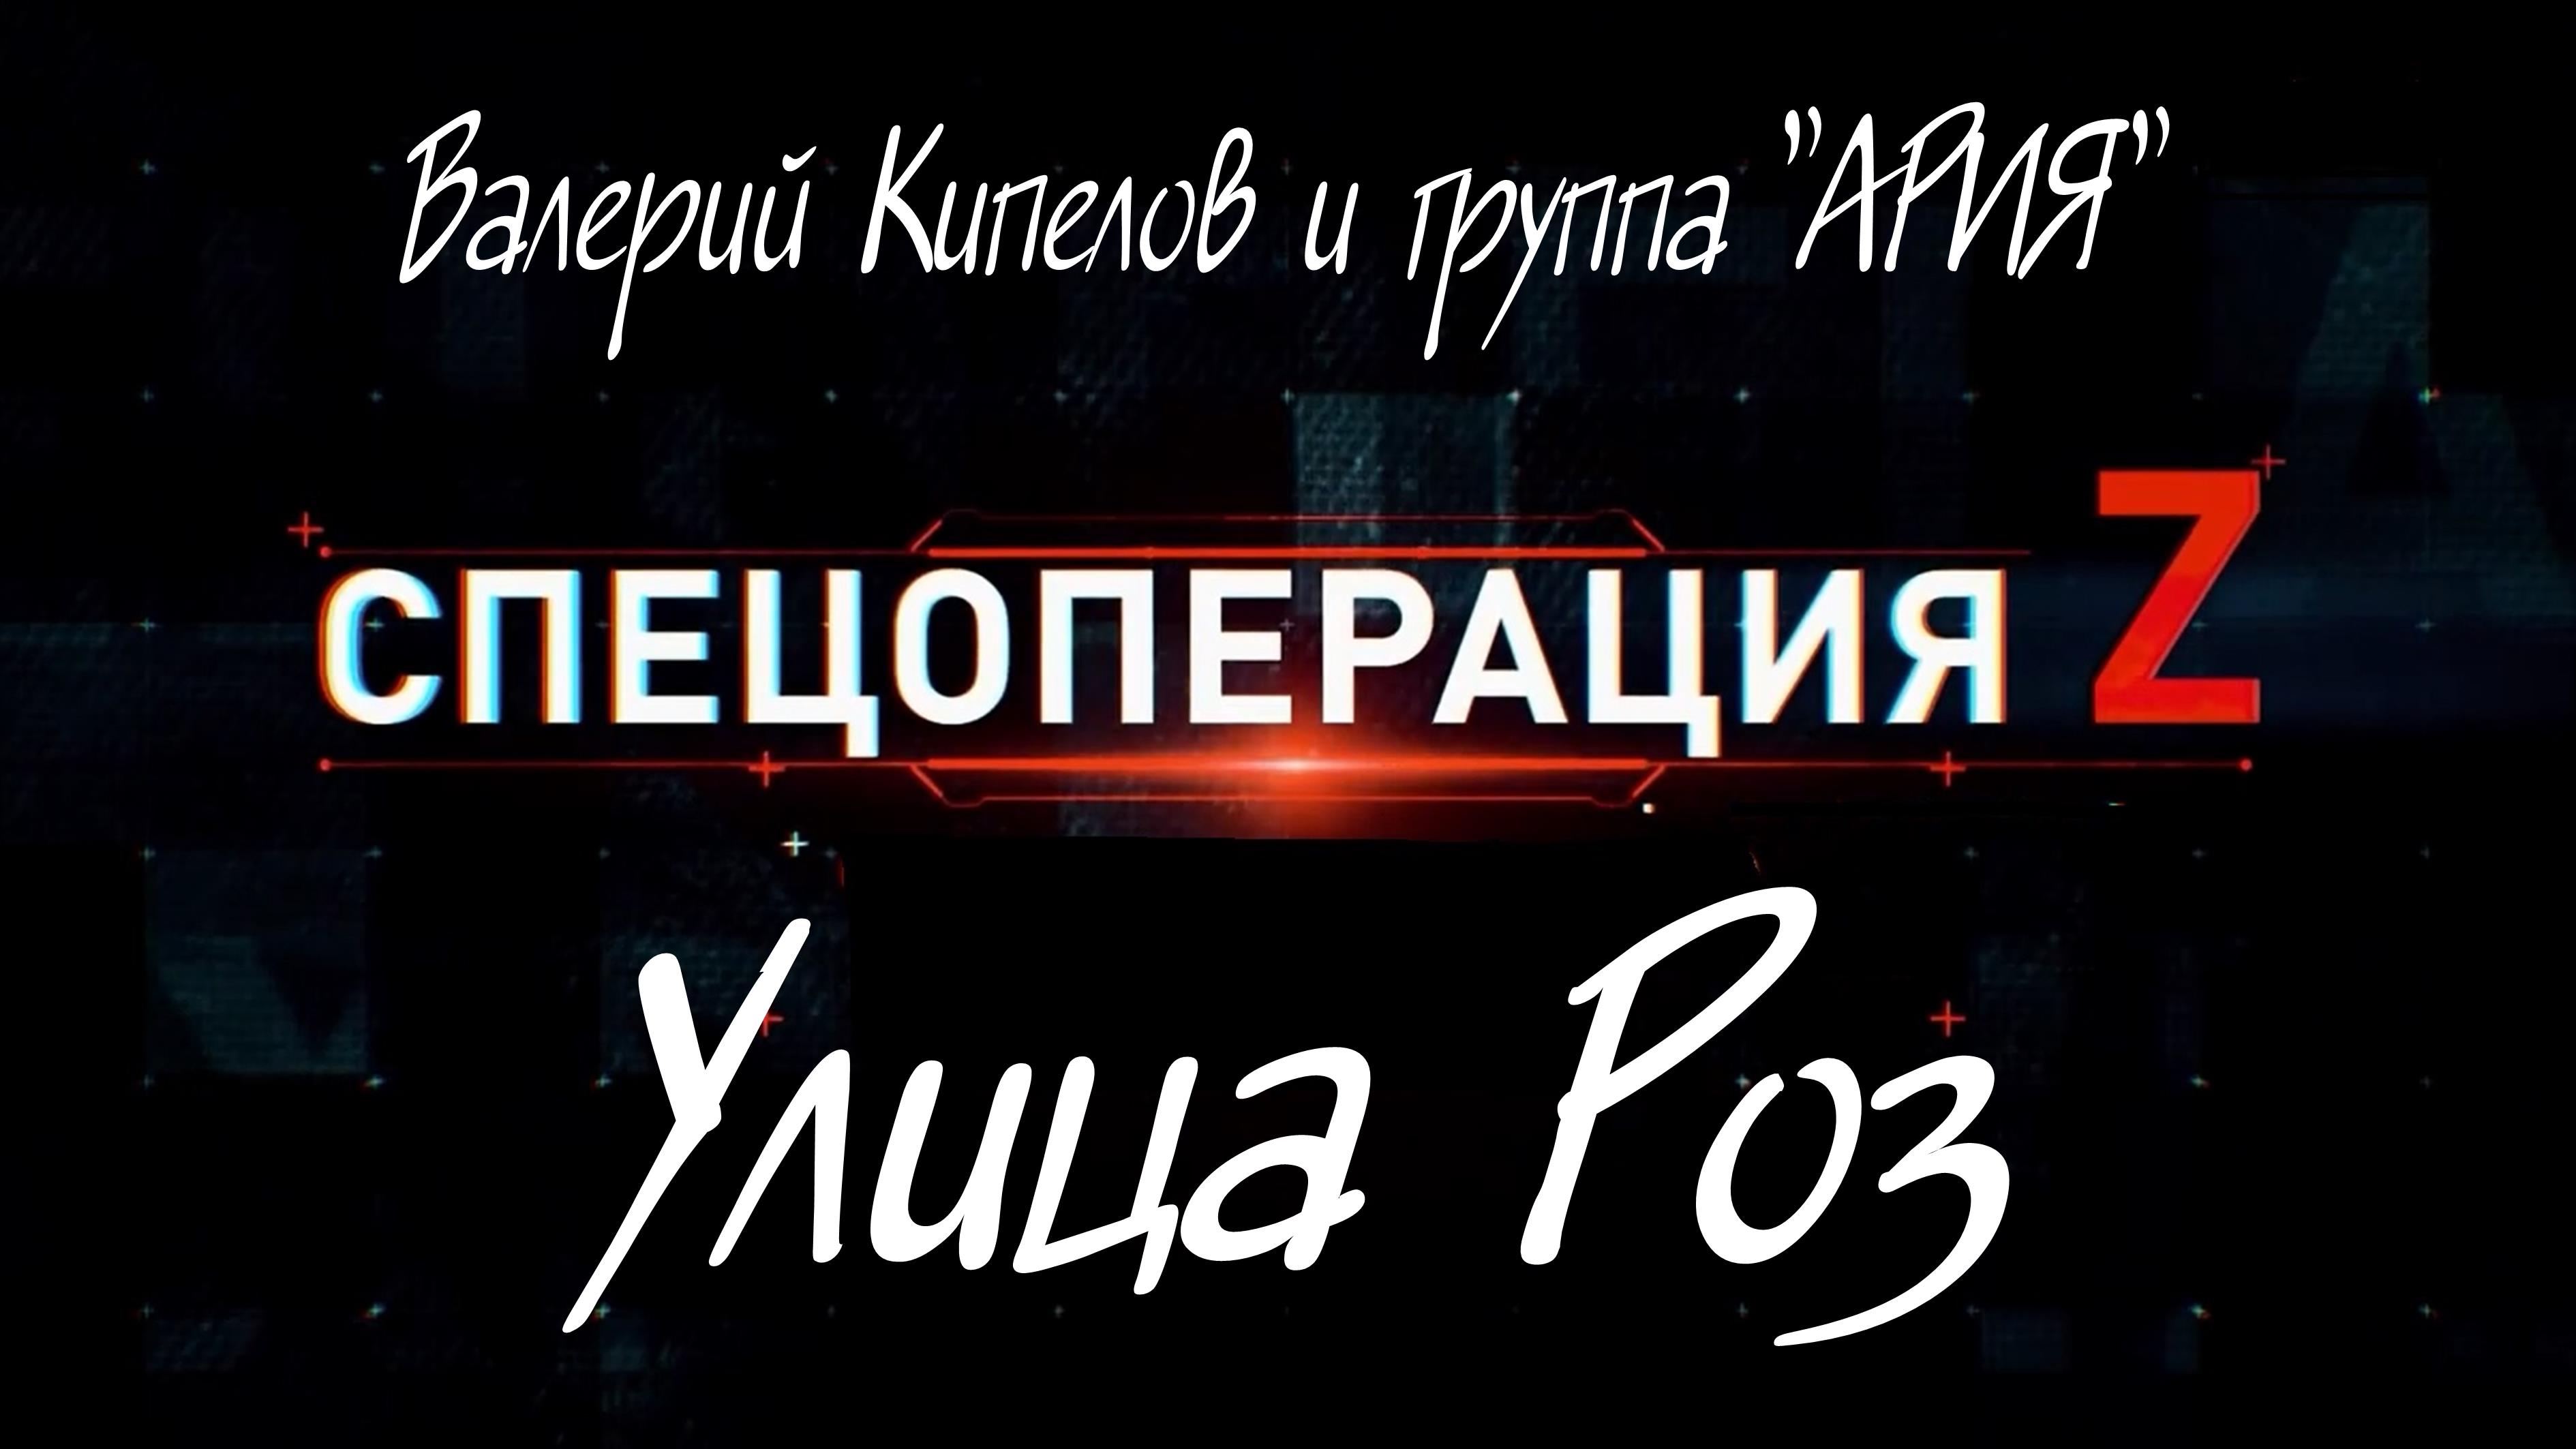 "УЛИЦА РОЗ", Валерий Кипелов и группа "Ария". Мой Дзен-Канал(больше видео), ссылка в описании.